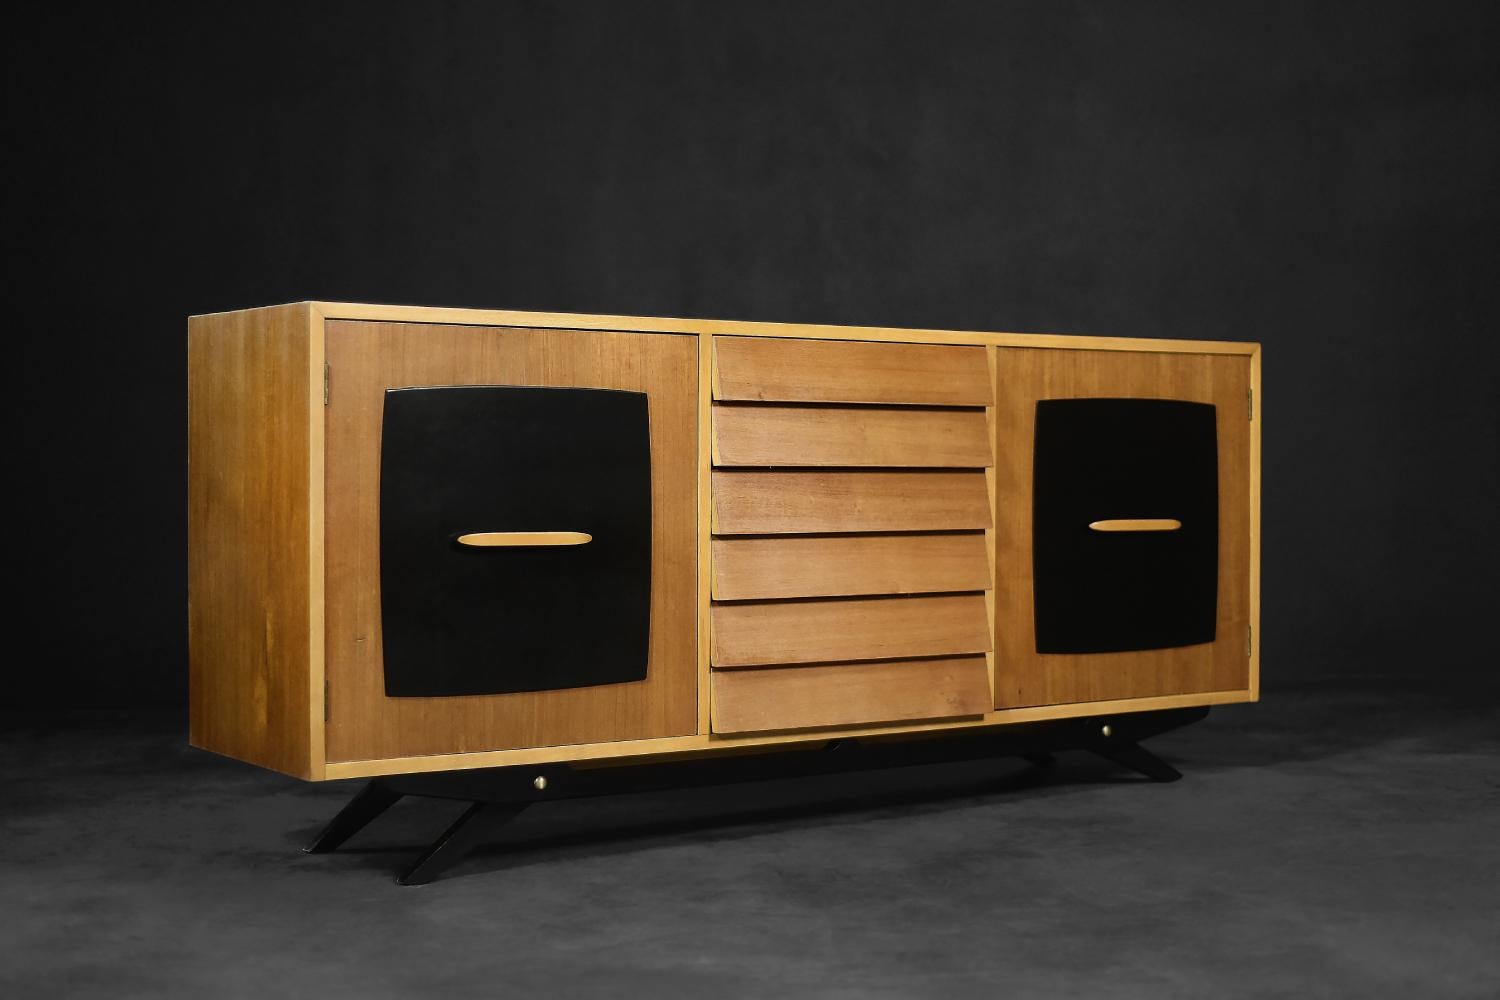 Dieses modernistische Sideboard wurde 1955 von Gillis Lundgren für das schwedische Unternehmen IKEA entworfen. Das Möbelstück gehört zu der Serie Forum, die 1956 im Katalog des Unternehmens erschien. Das Sideboard ist aus Teakholz in einem warmen